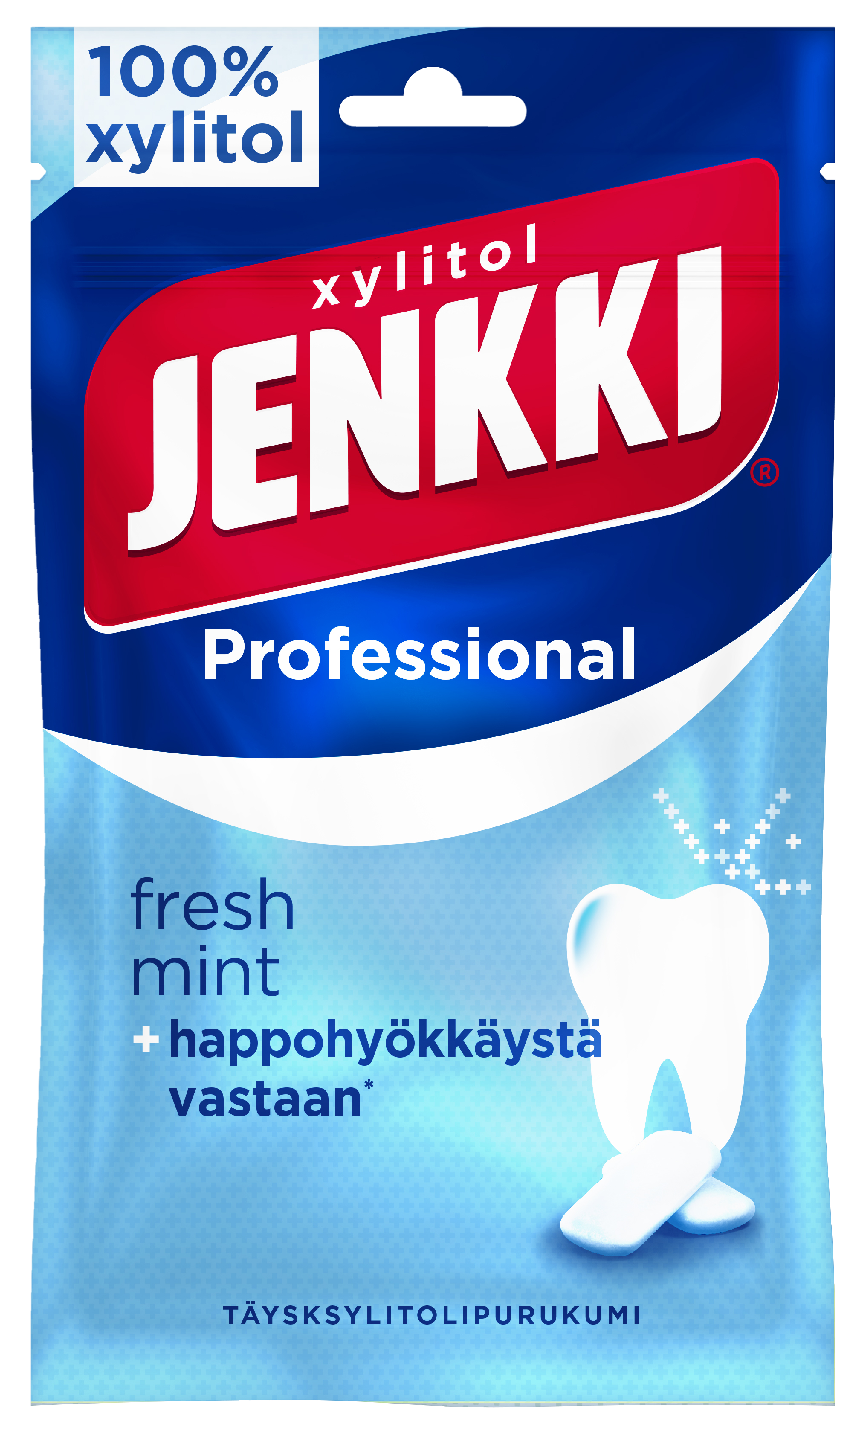 Jenkki professional fresh mint täysksylitolipurukumi 90g